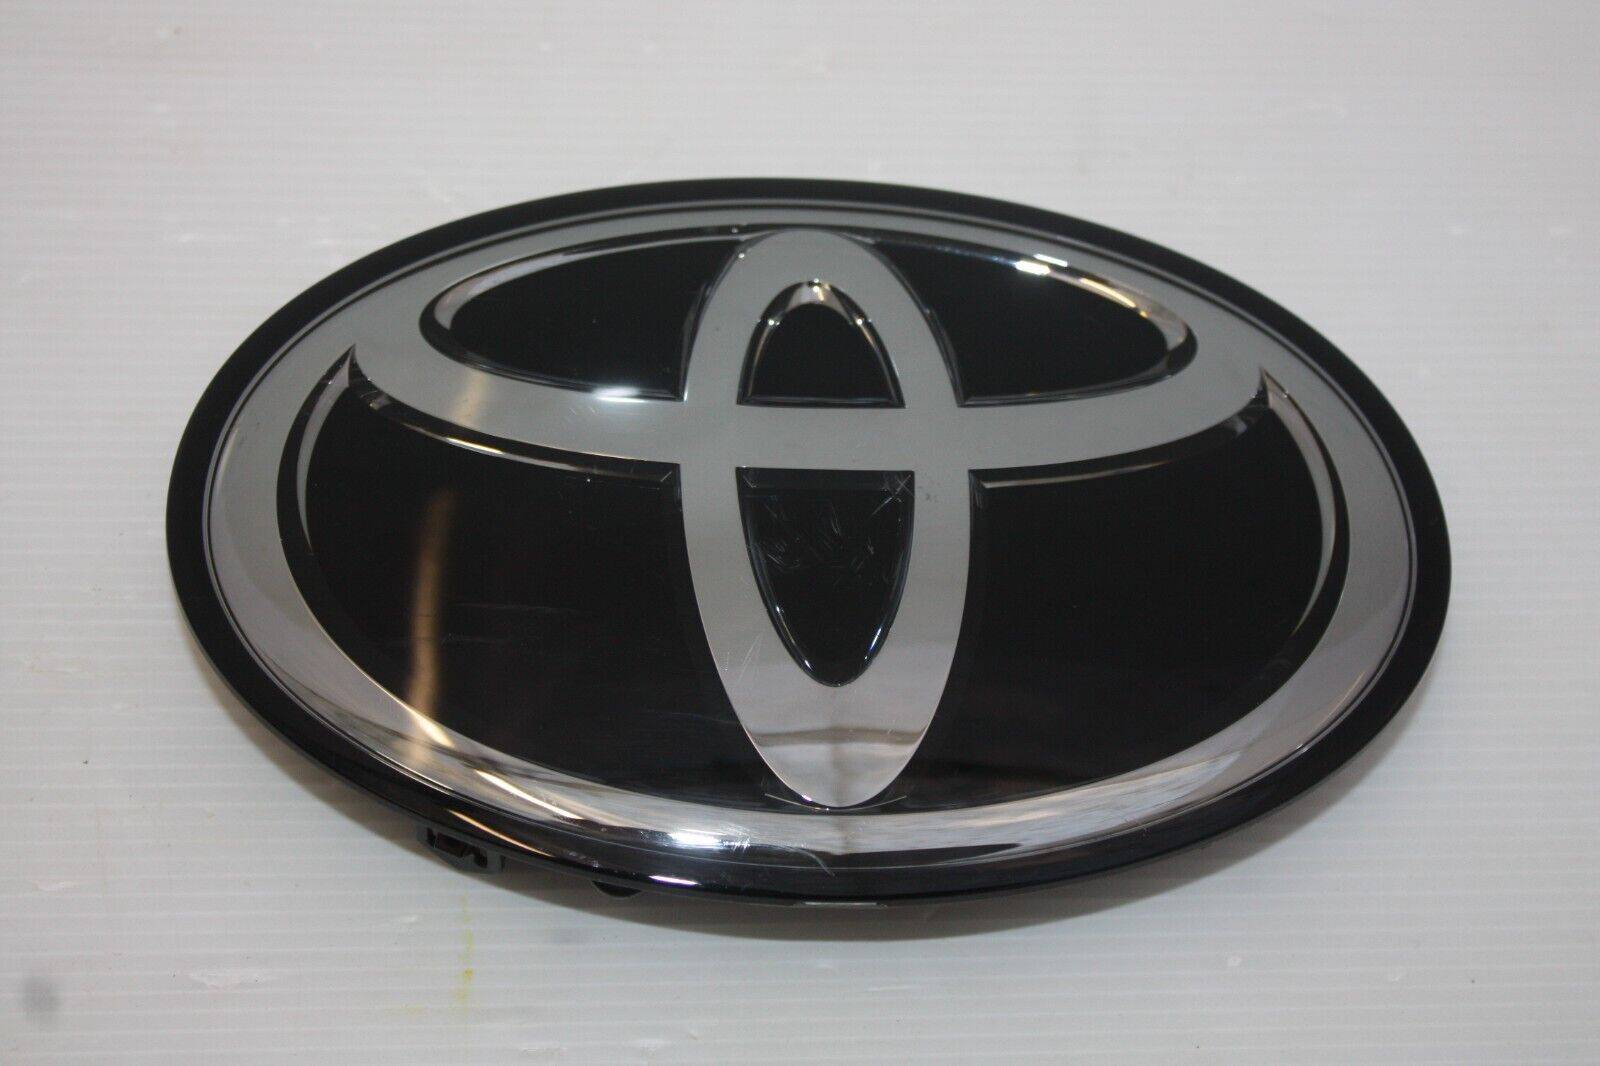 Toyota Tundra Tacoma Front Logo Emblem Badge 90975 02159 Genuine 175495502448